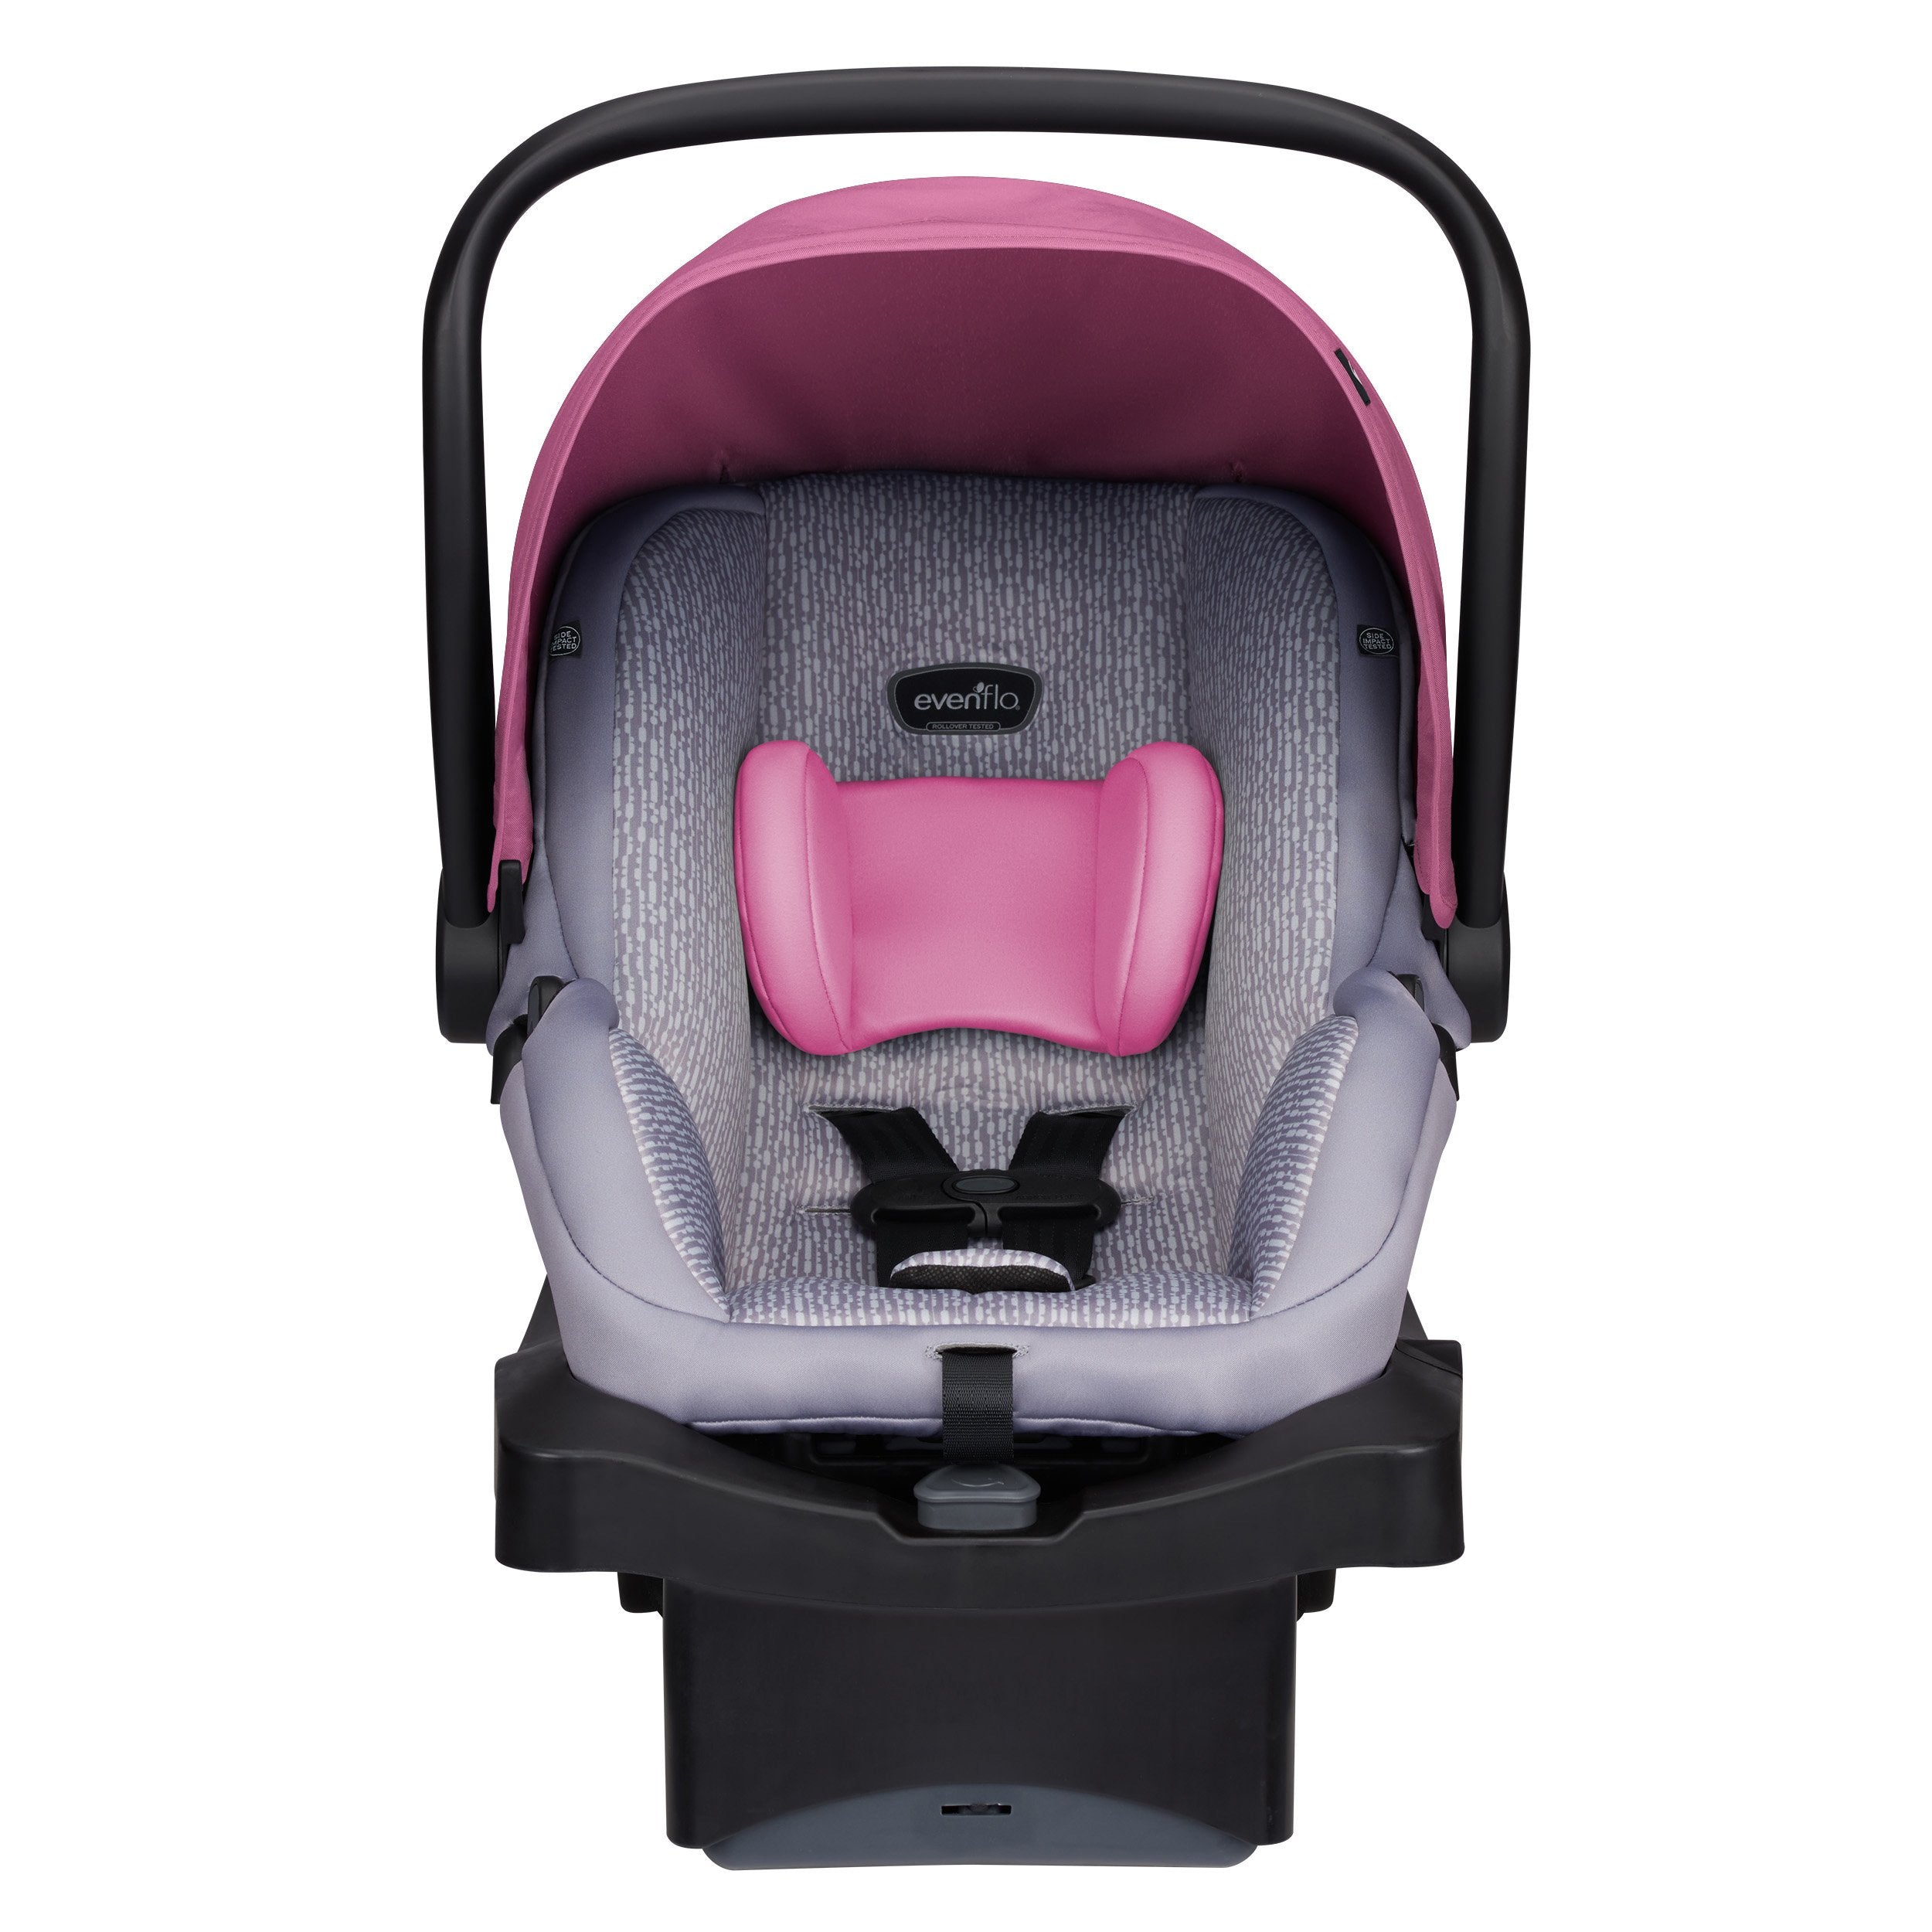  EvenfloLiteMax Infant Car Seat